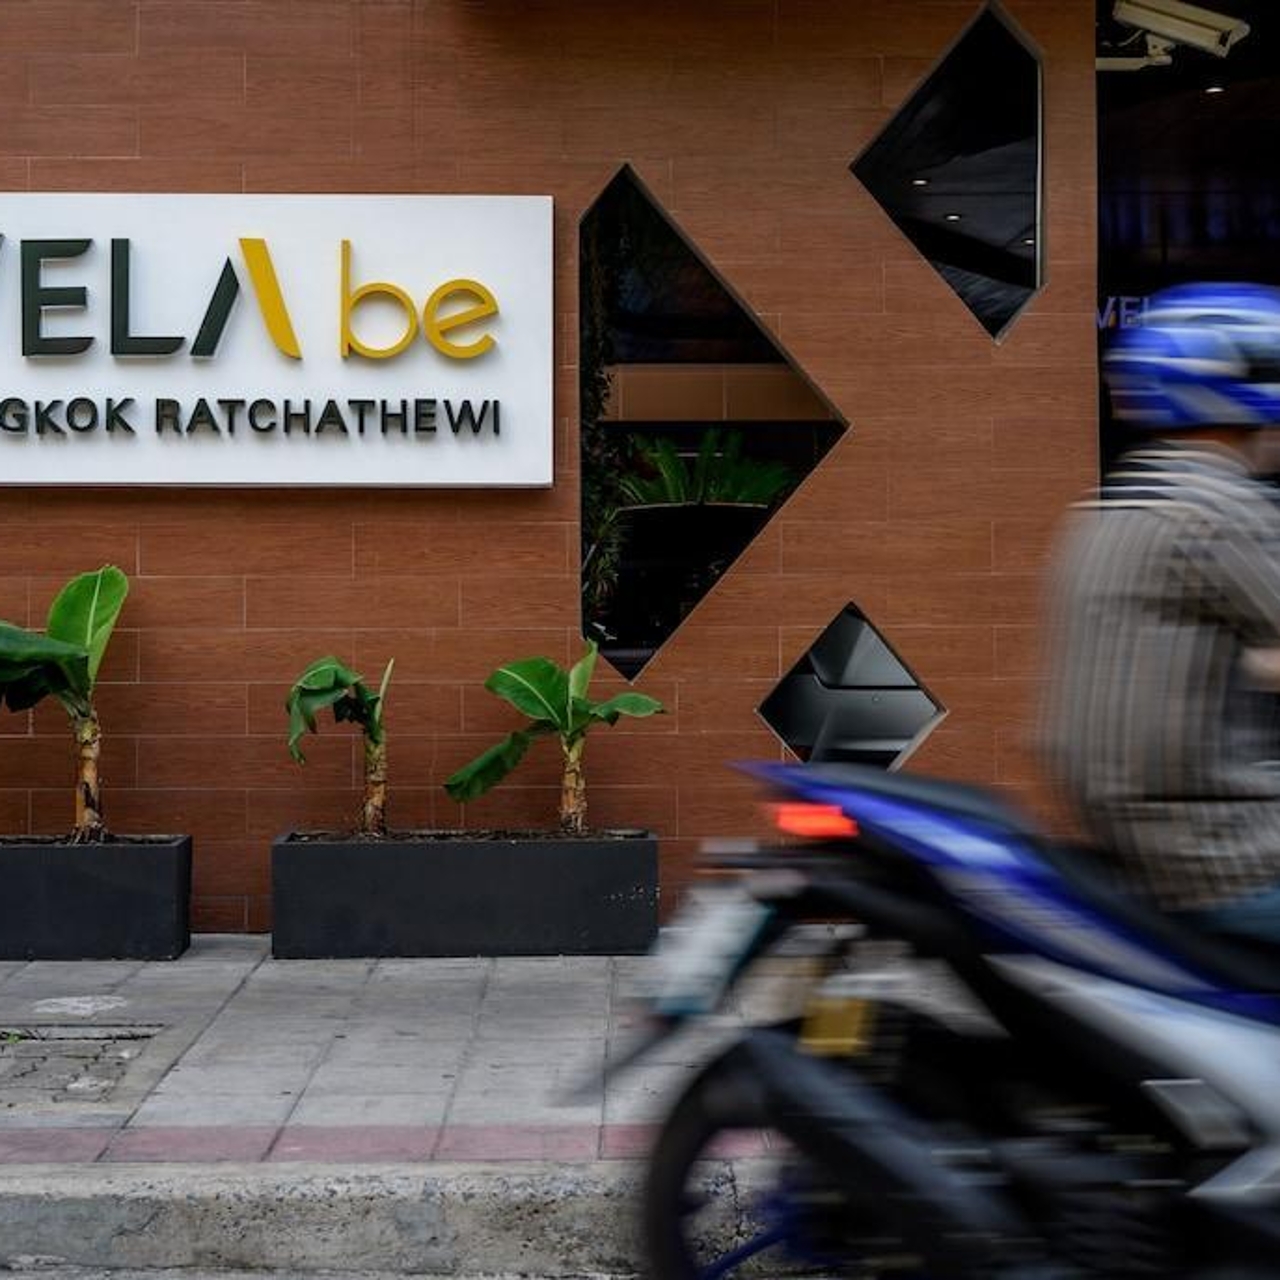 Hotel VELA be Bangkok Ratchathewi en HRS con servicios gratuitos